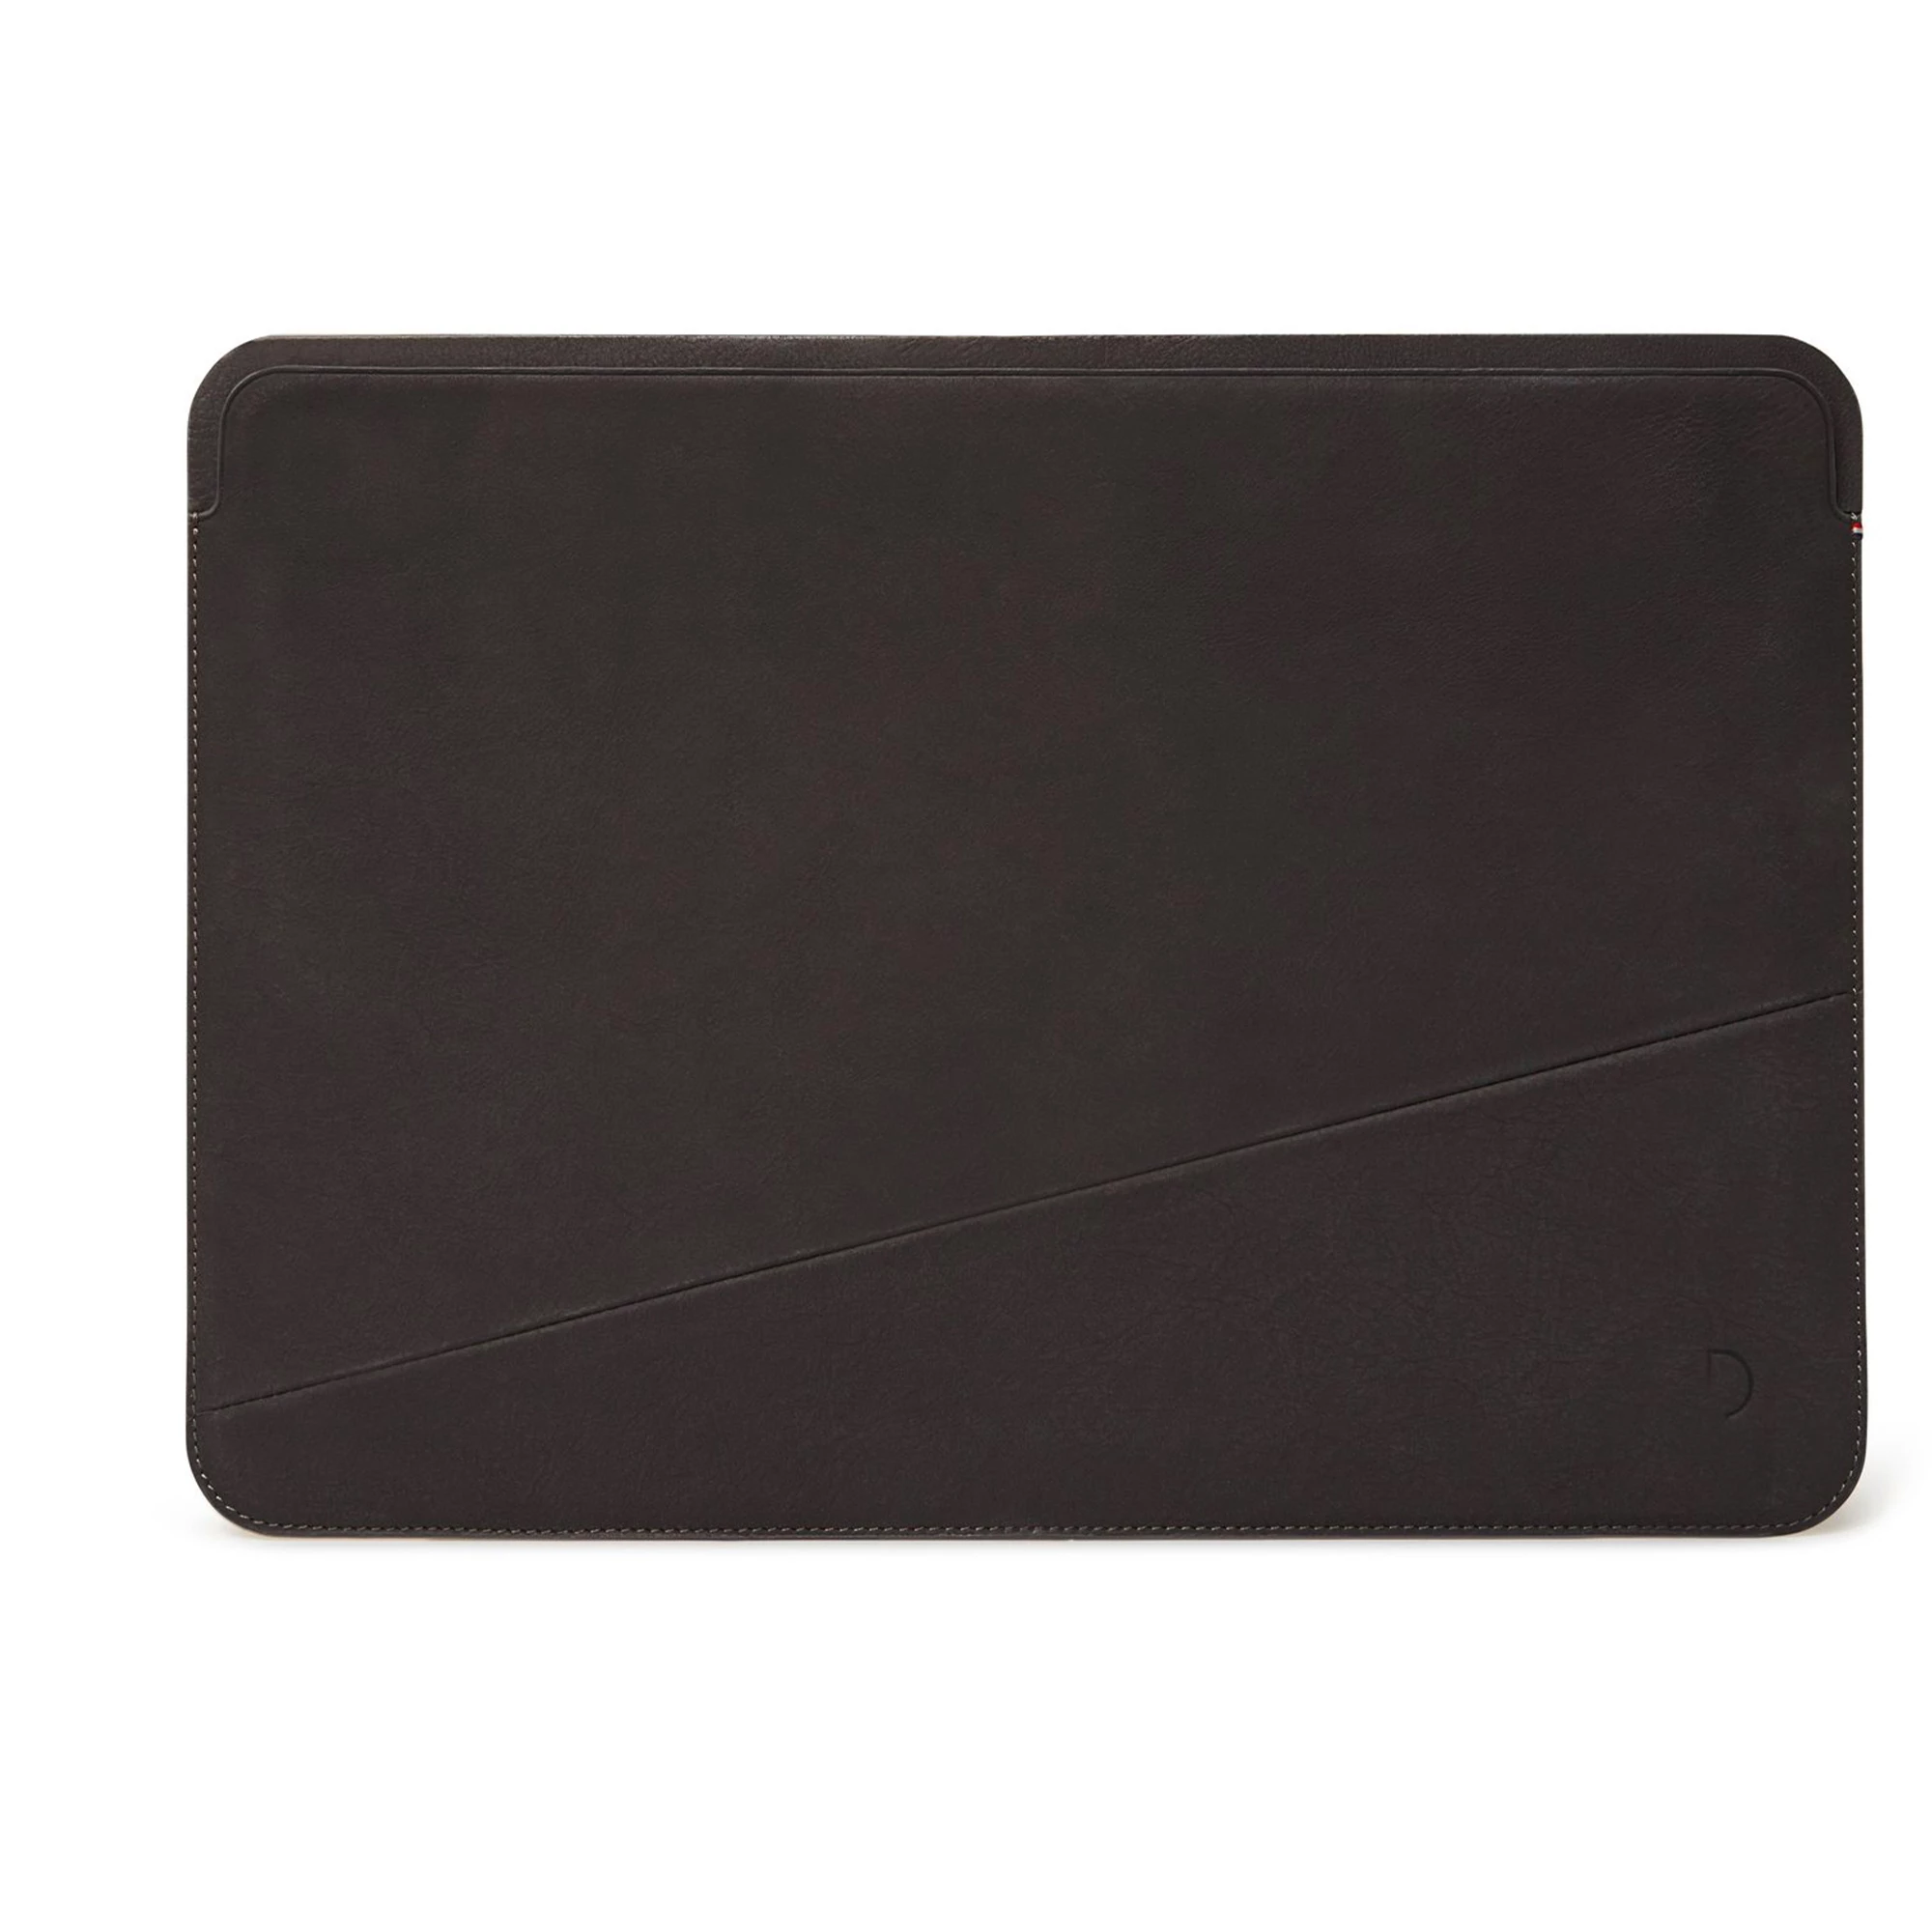 Чехол-папка DECODED Leather Frame Sleeve для MacBook 13" - Anthracite (D21MFS13AE)